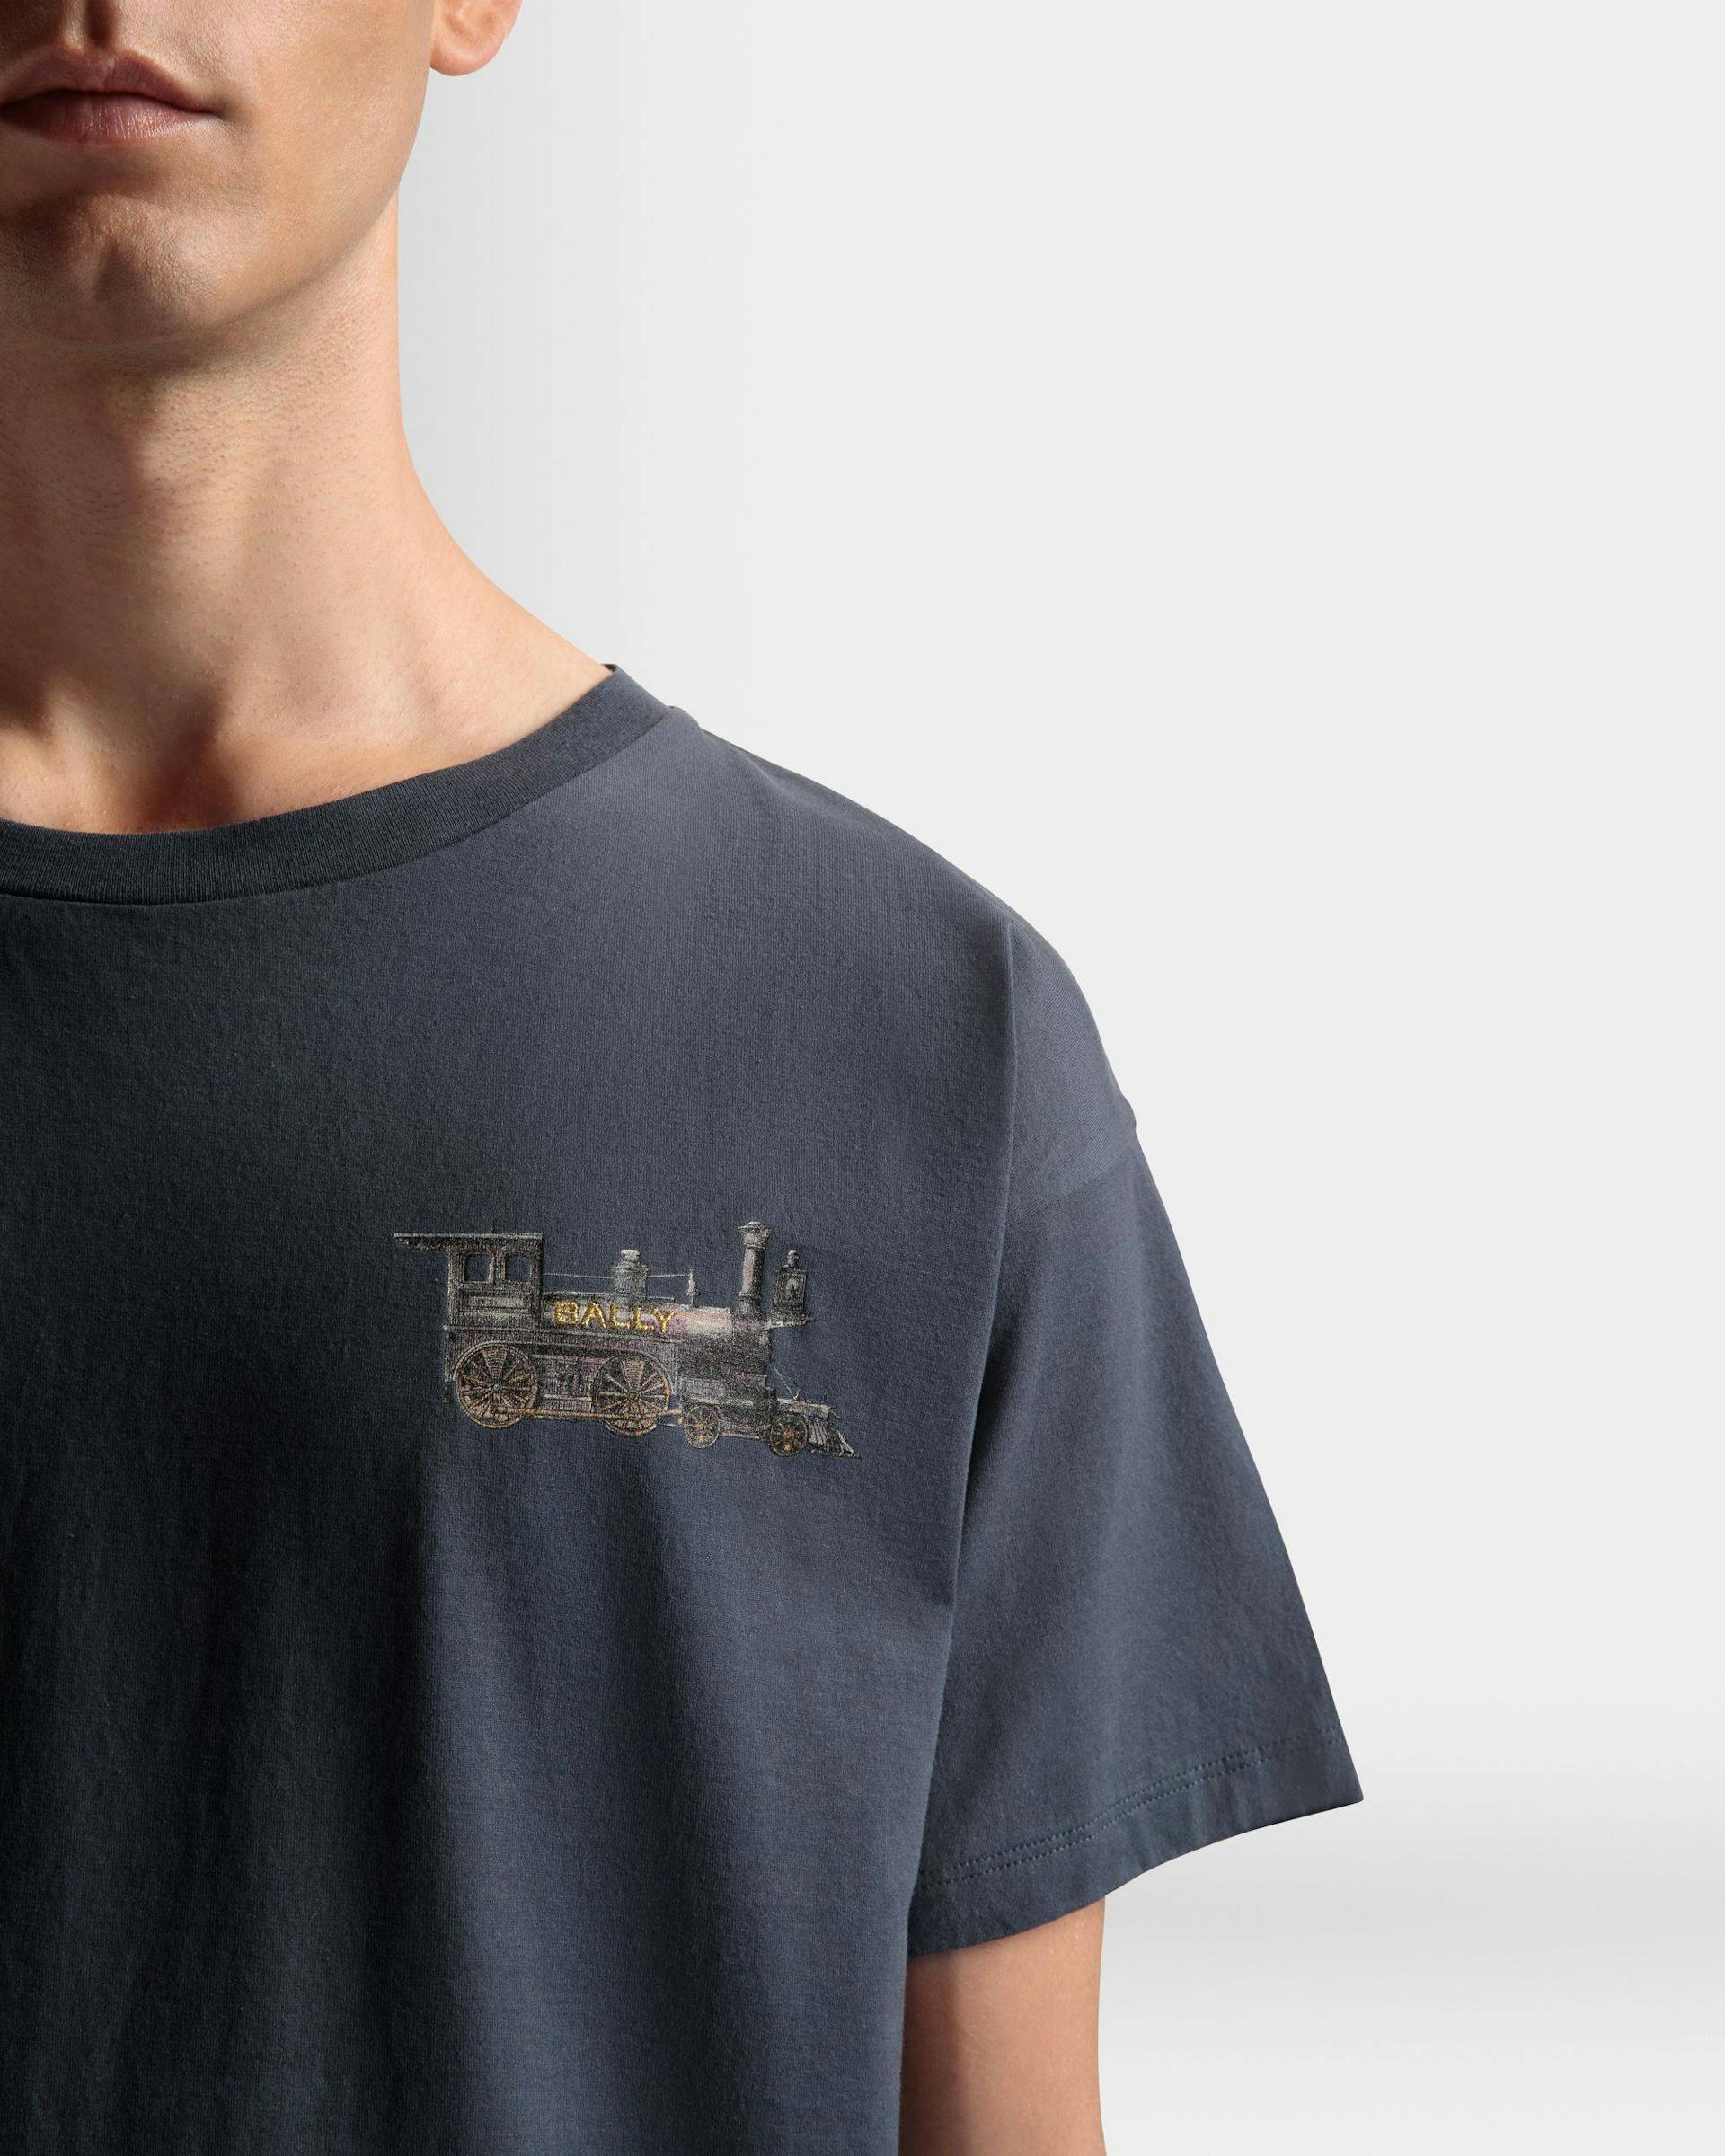 T-Shirt mit Train-Motiv Aus steingrauer Baumwolle - Herren - Bally - 04